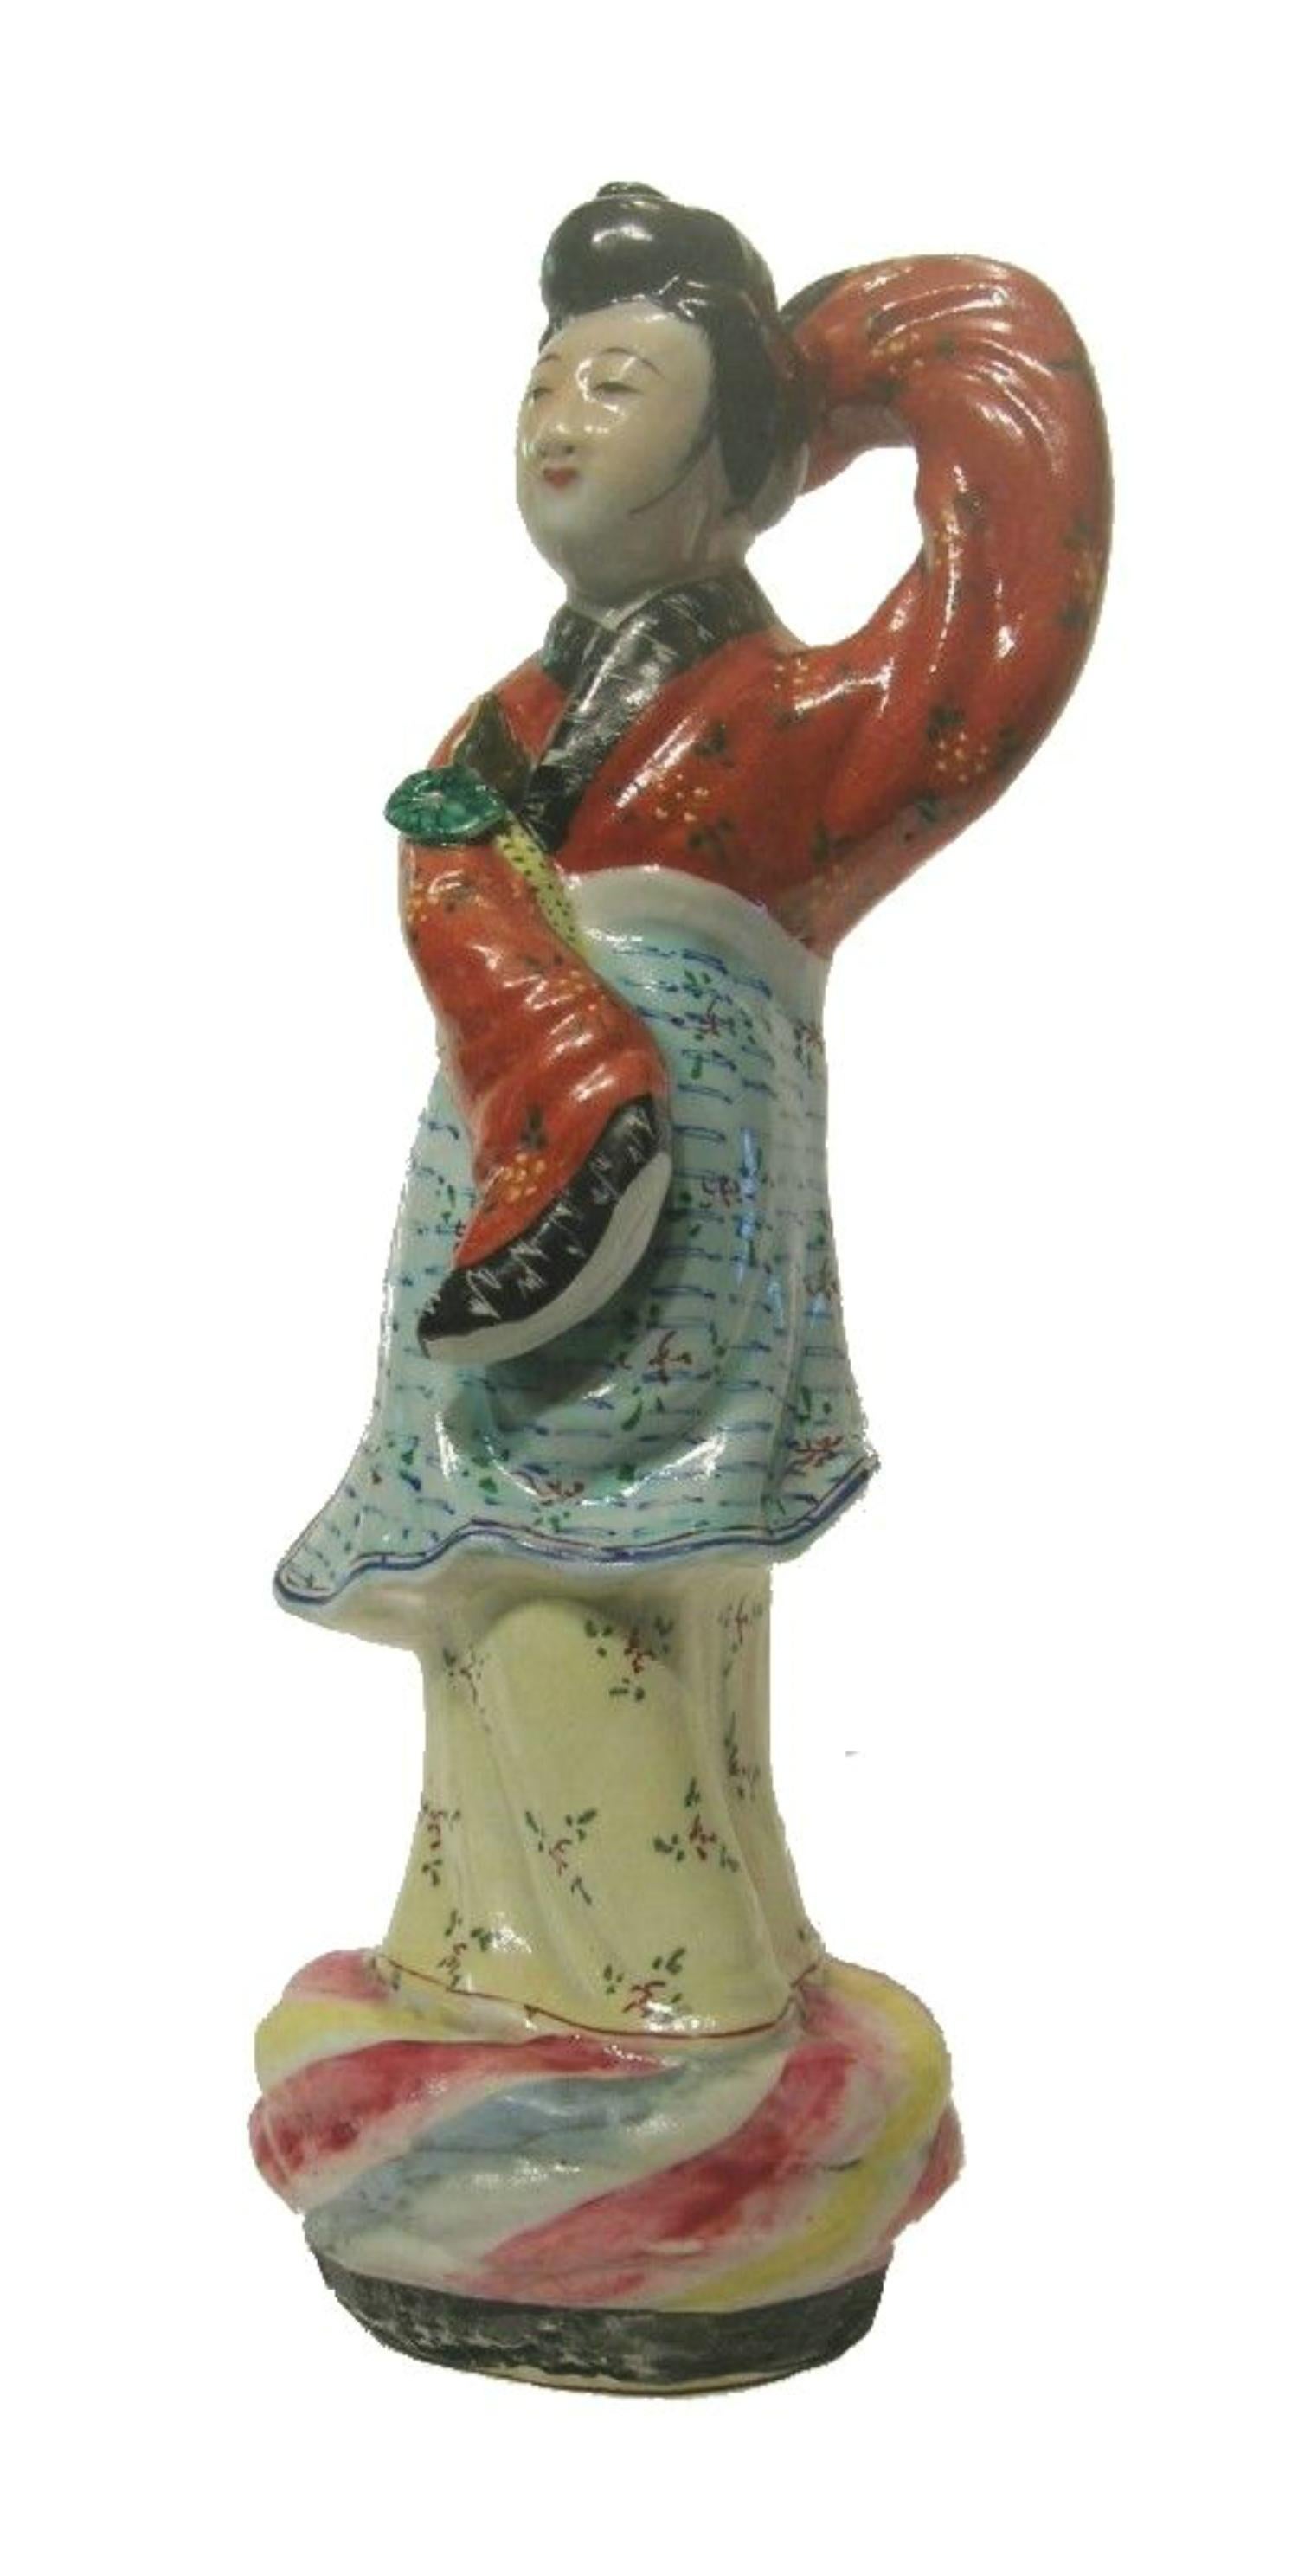 Vintage famille rose porcelaine femme de cour dansante - peint à la main - marques indistinctes à l'intérieur de la base - Chine - circa 1930.

Excellent état vintage - pas de perte - pas de dommage - pas de réparation.

Taille - 4 1/2